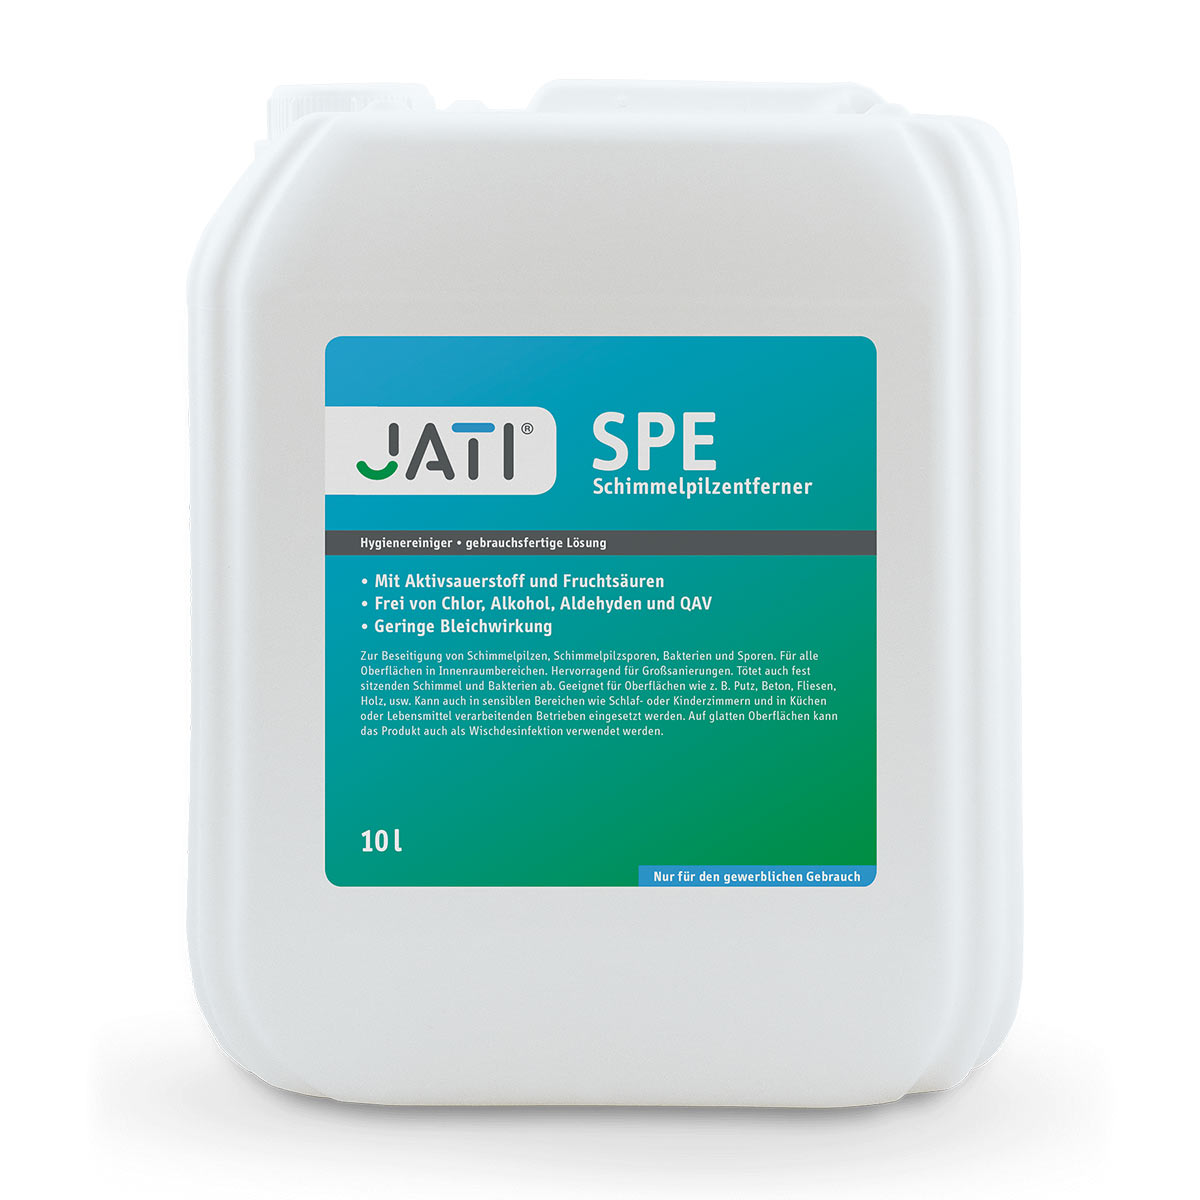 Eliminateur de moisissures, JATI SPE, pour env. 100 m2